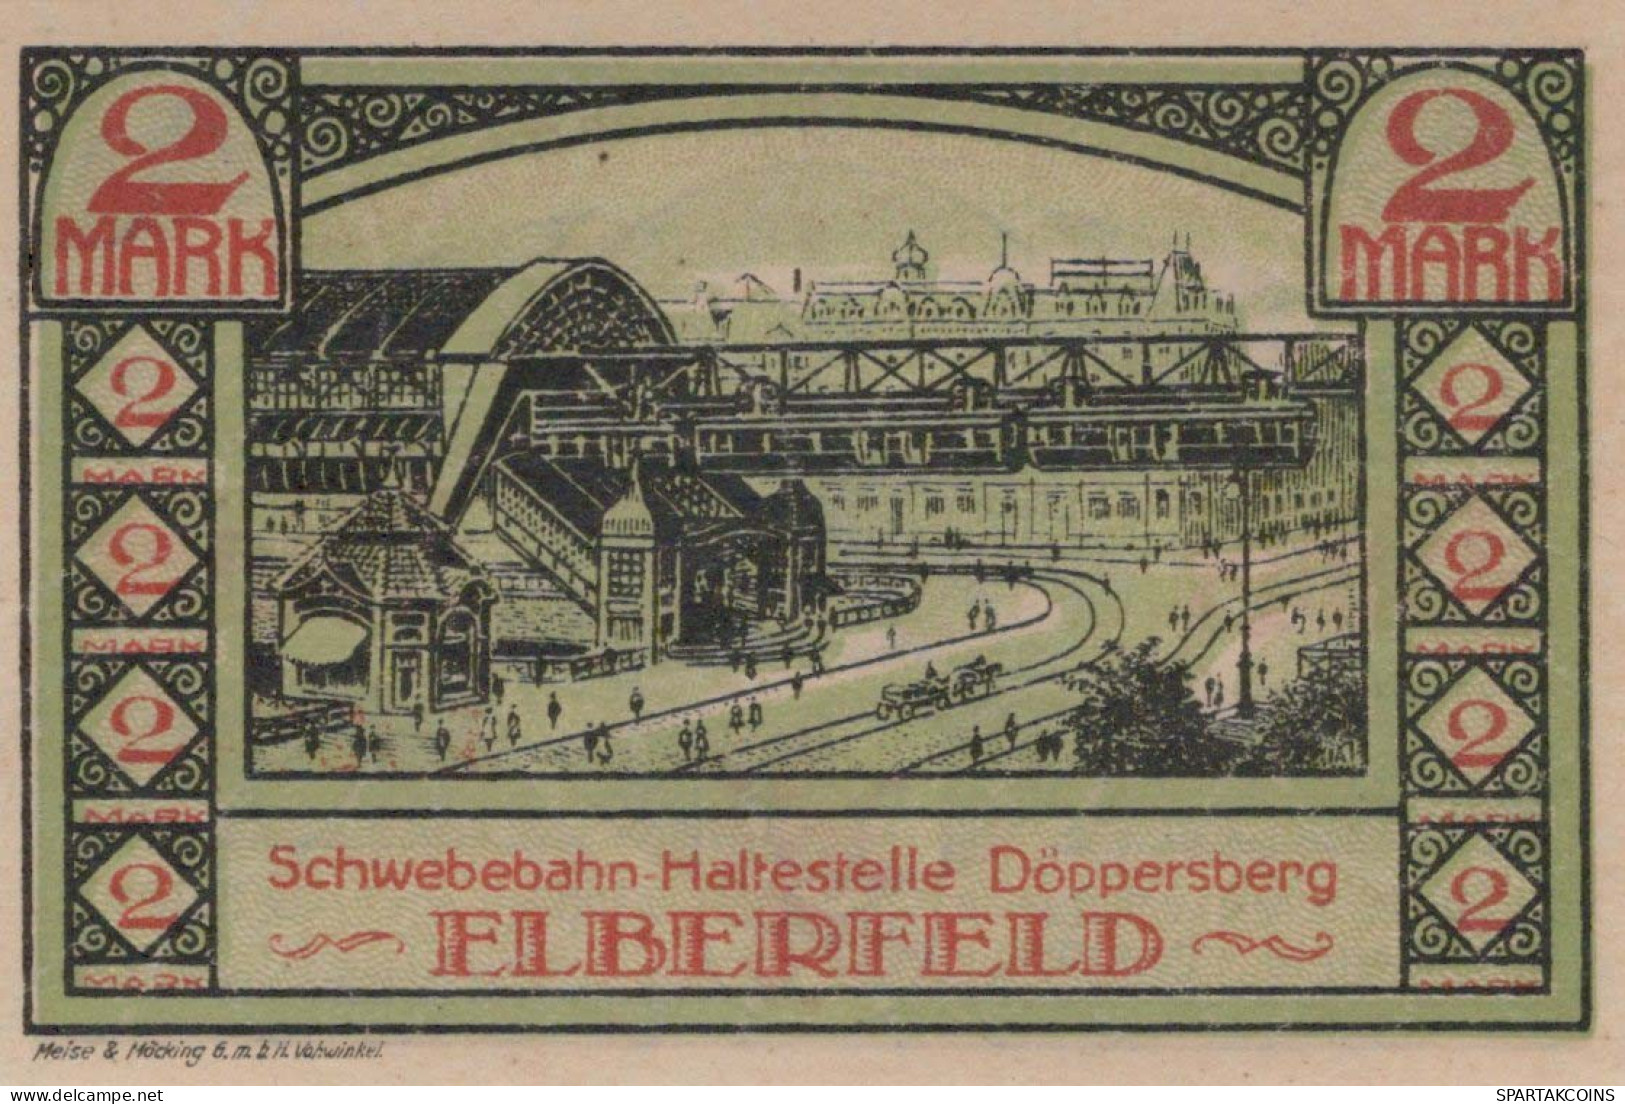 2 MARK 1920 Stadt ELBERFELD Rhine UNC DEUTSCHLAND Notgeld Banknote #PB162 - [11] Emissions Locales